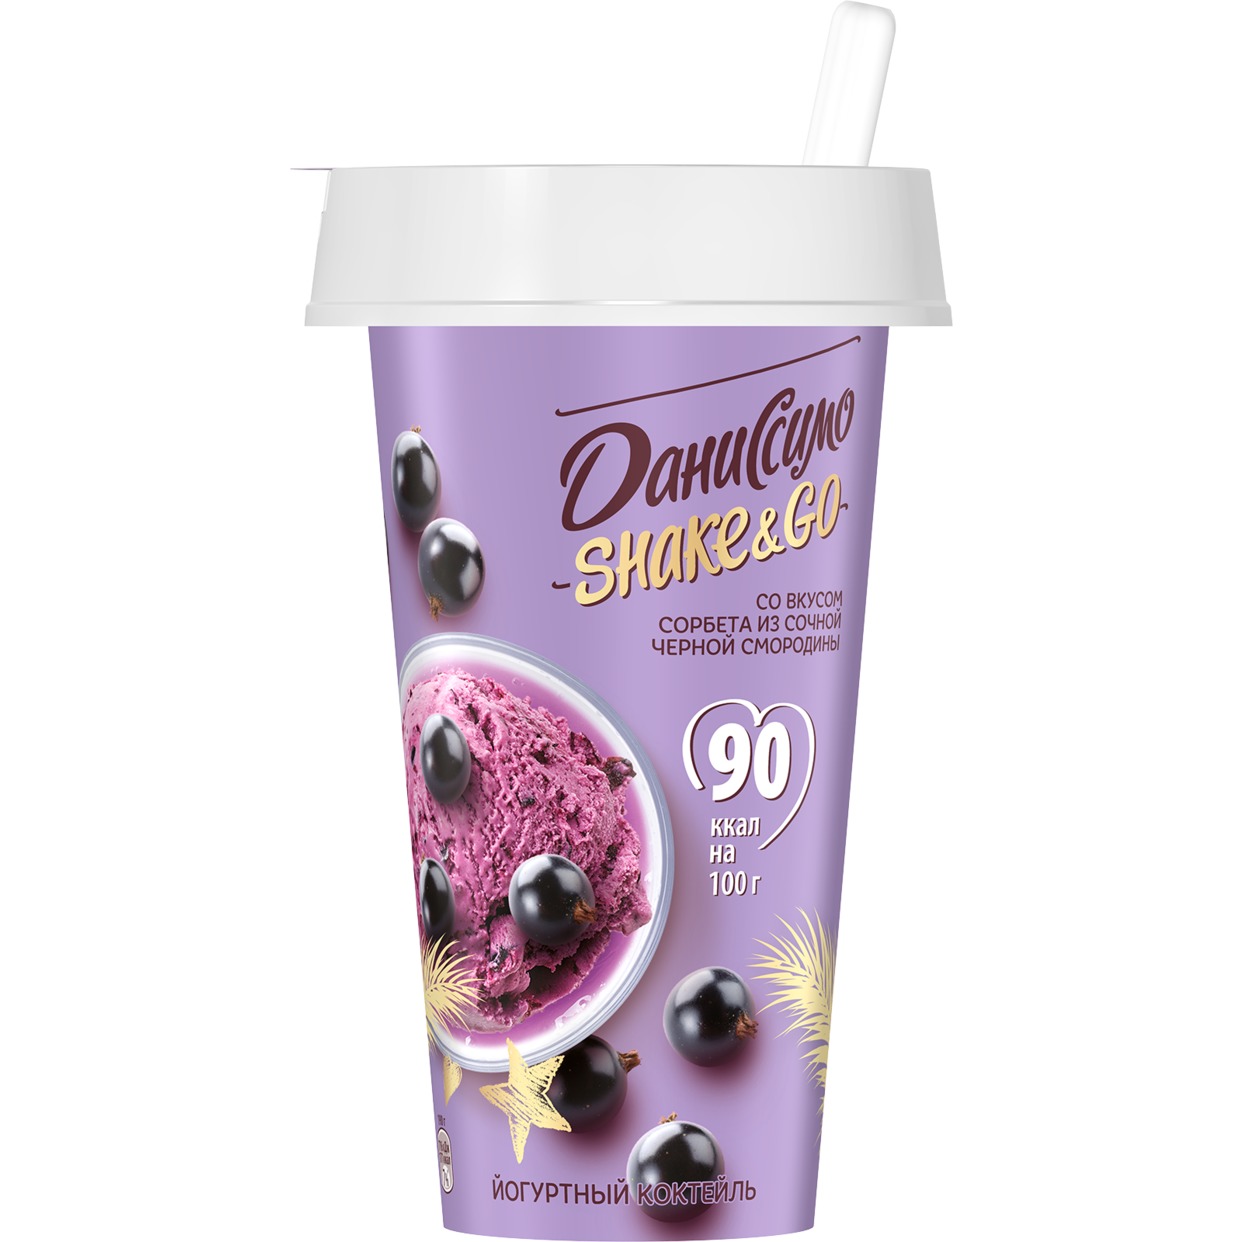 БЗМЖ Даниссимо Коктейль кисломолочный йогуртный с наполнителем со вкусом сорбета из сочной черной смородины, 190г 2,7% по акции в Пятерочке